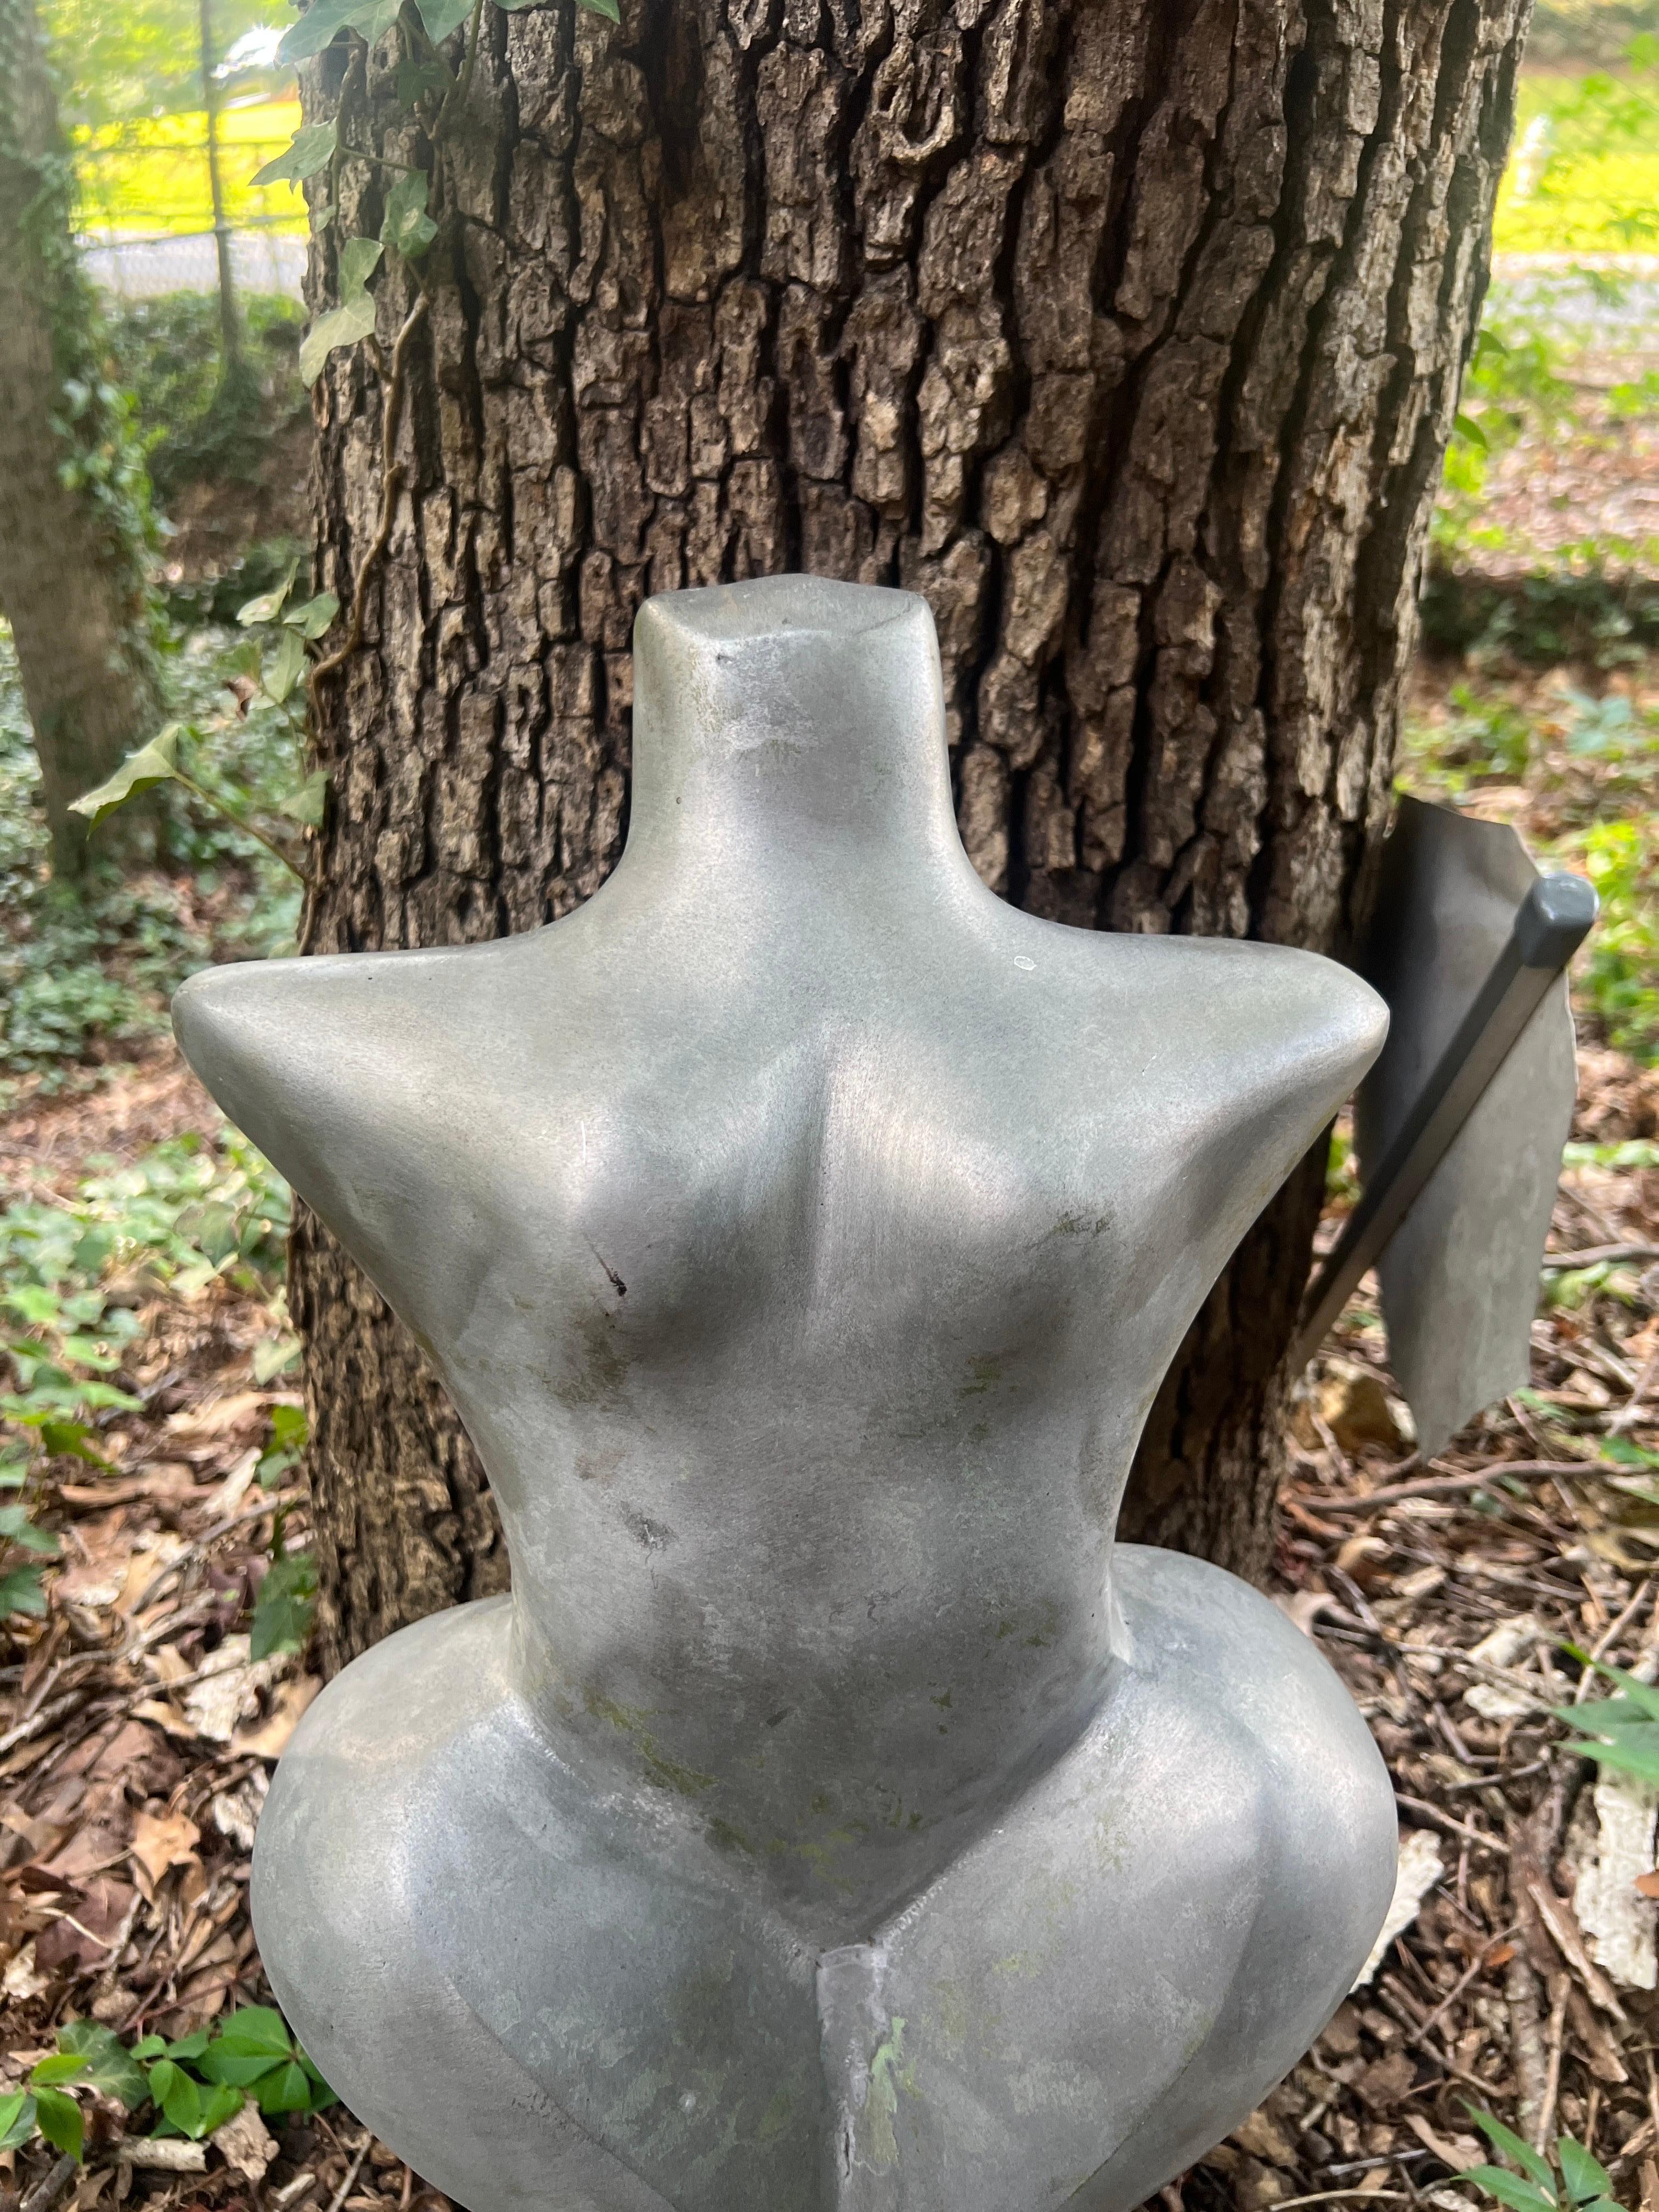 Möglicherweise französisch, Anfang des 20. Jahrhunderts. 

Eine sehr einzigartige Aluminiumskulptur, die einen nackten weiblichen Torso darstellt, möglicherweise eine Venusdarstellung. 
Dieses Stück stammte aus einem Garten in Neuengland, wo es nach